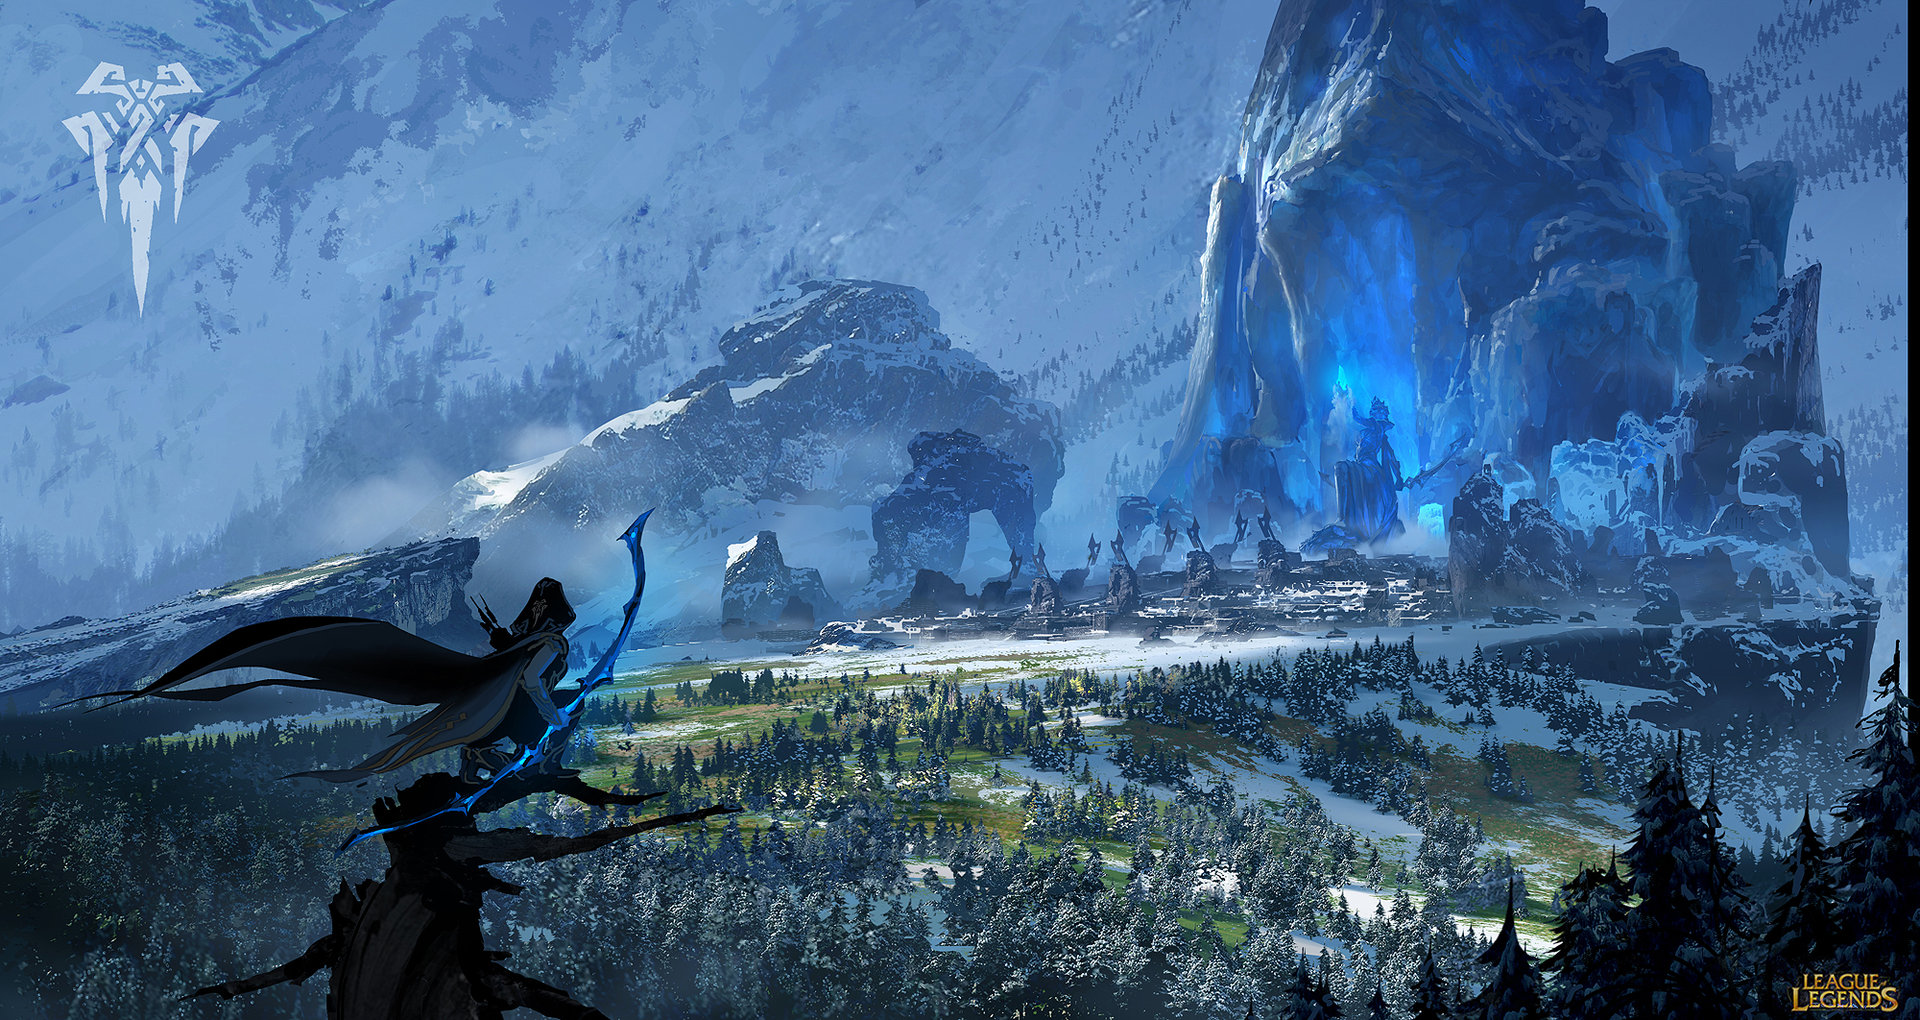 General 1920x1020 League of Legends Ashe (League of Legends) landscape fantasy art fantasy city forest mountains snow